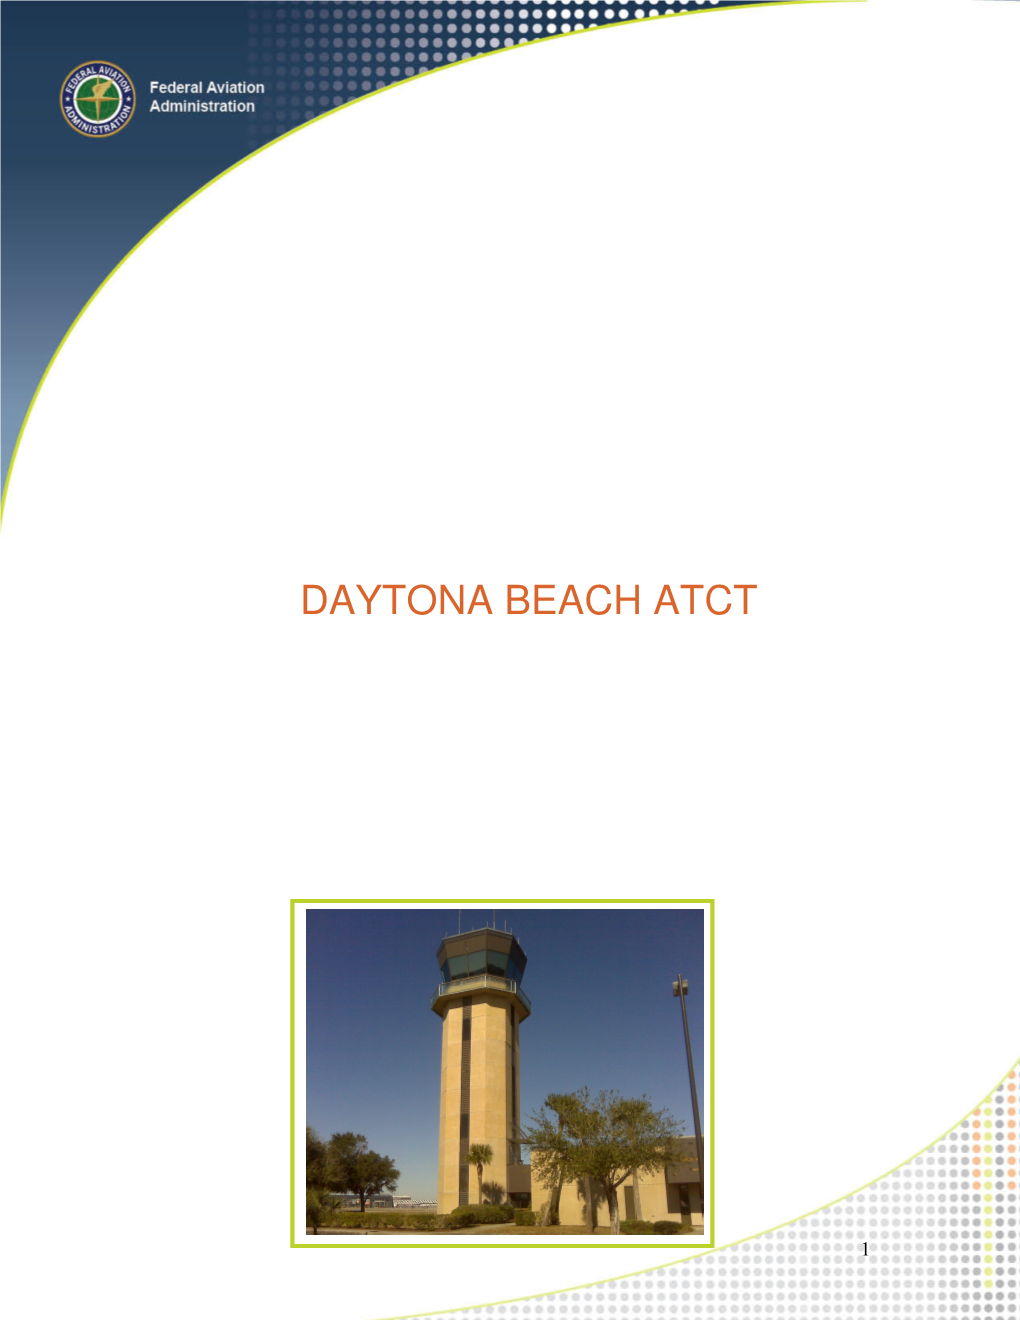 Daytona Beach Atct